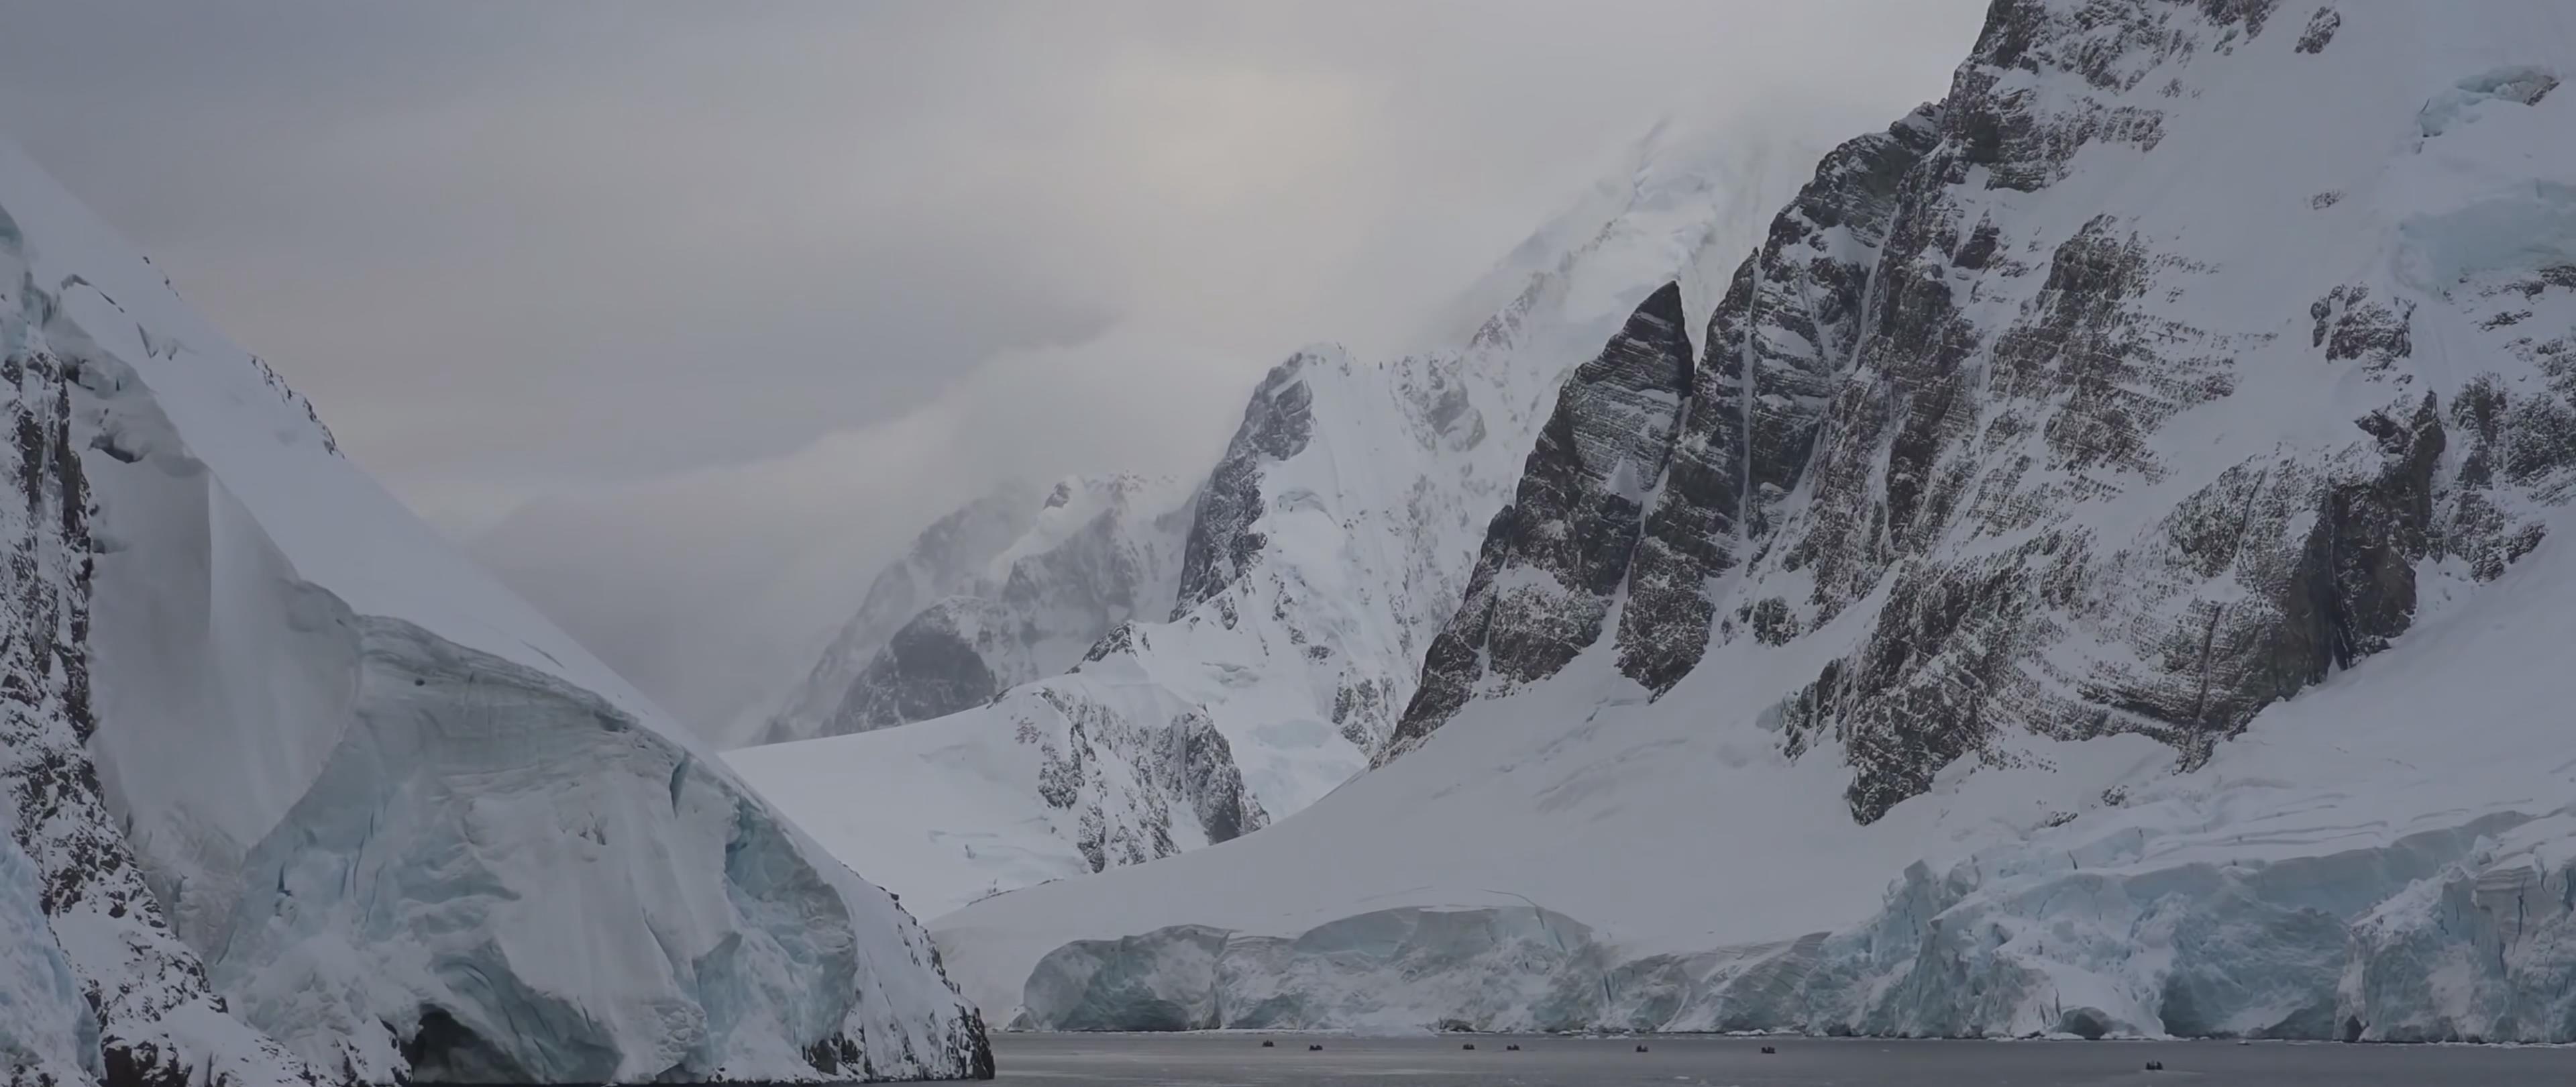 雪山 冰川 南极 企鹅 北极 冰山 海豹 鲸鱼 海鸥 雪 大海 4k